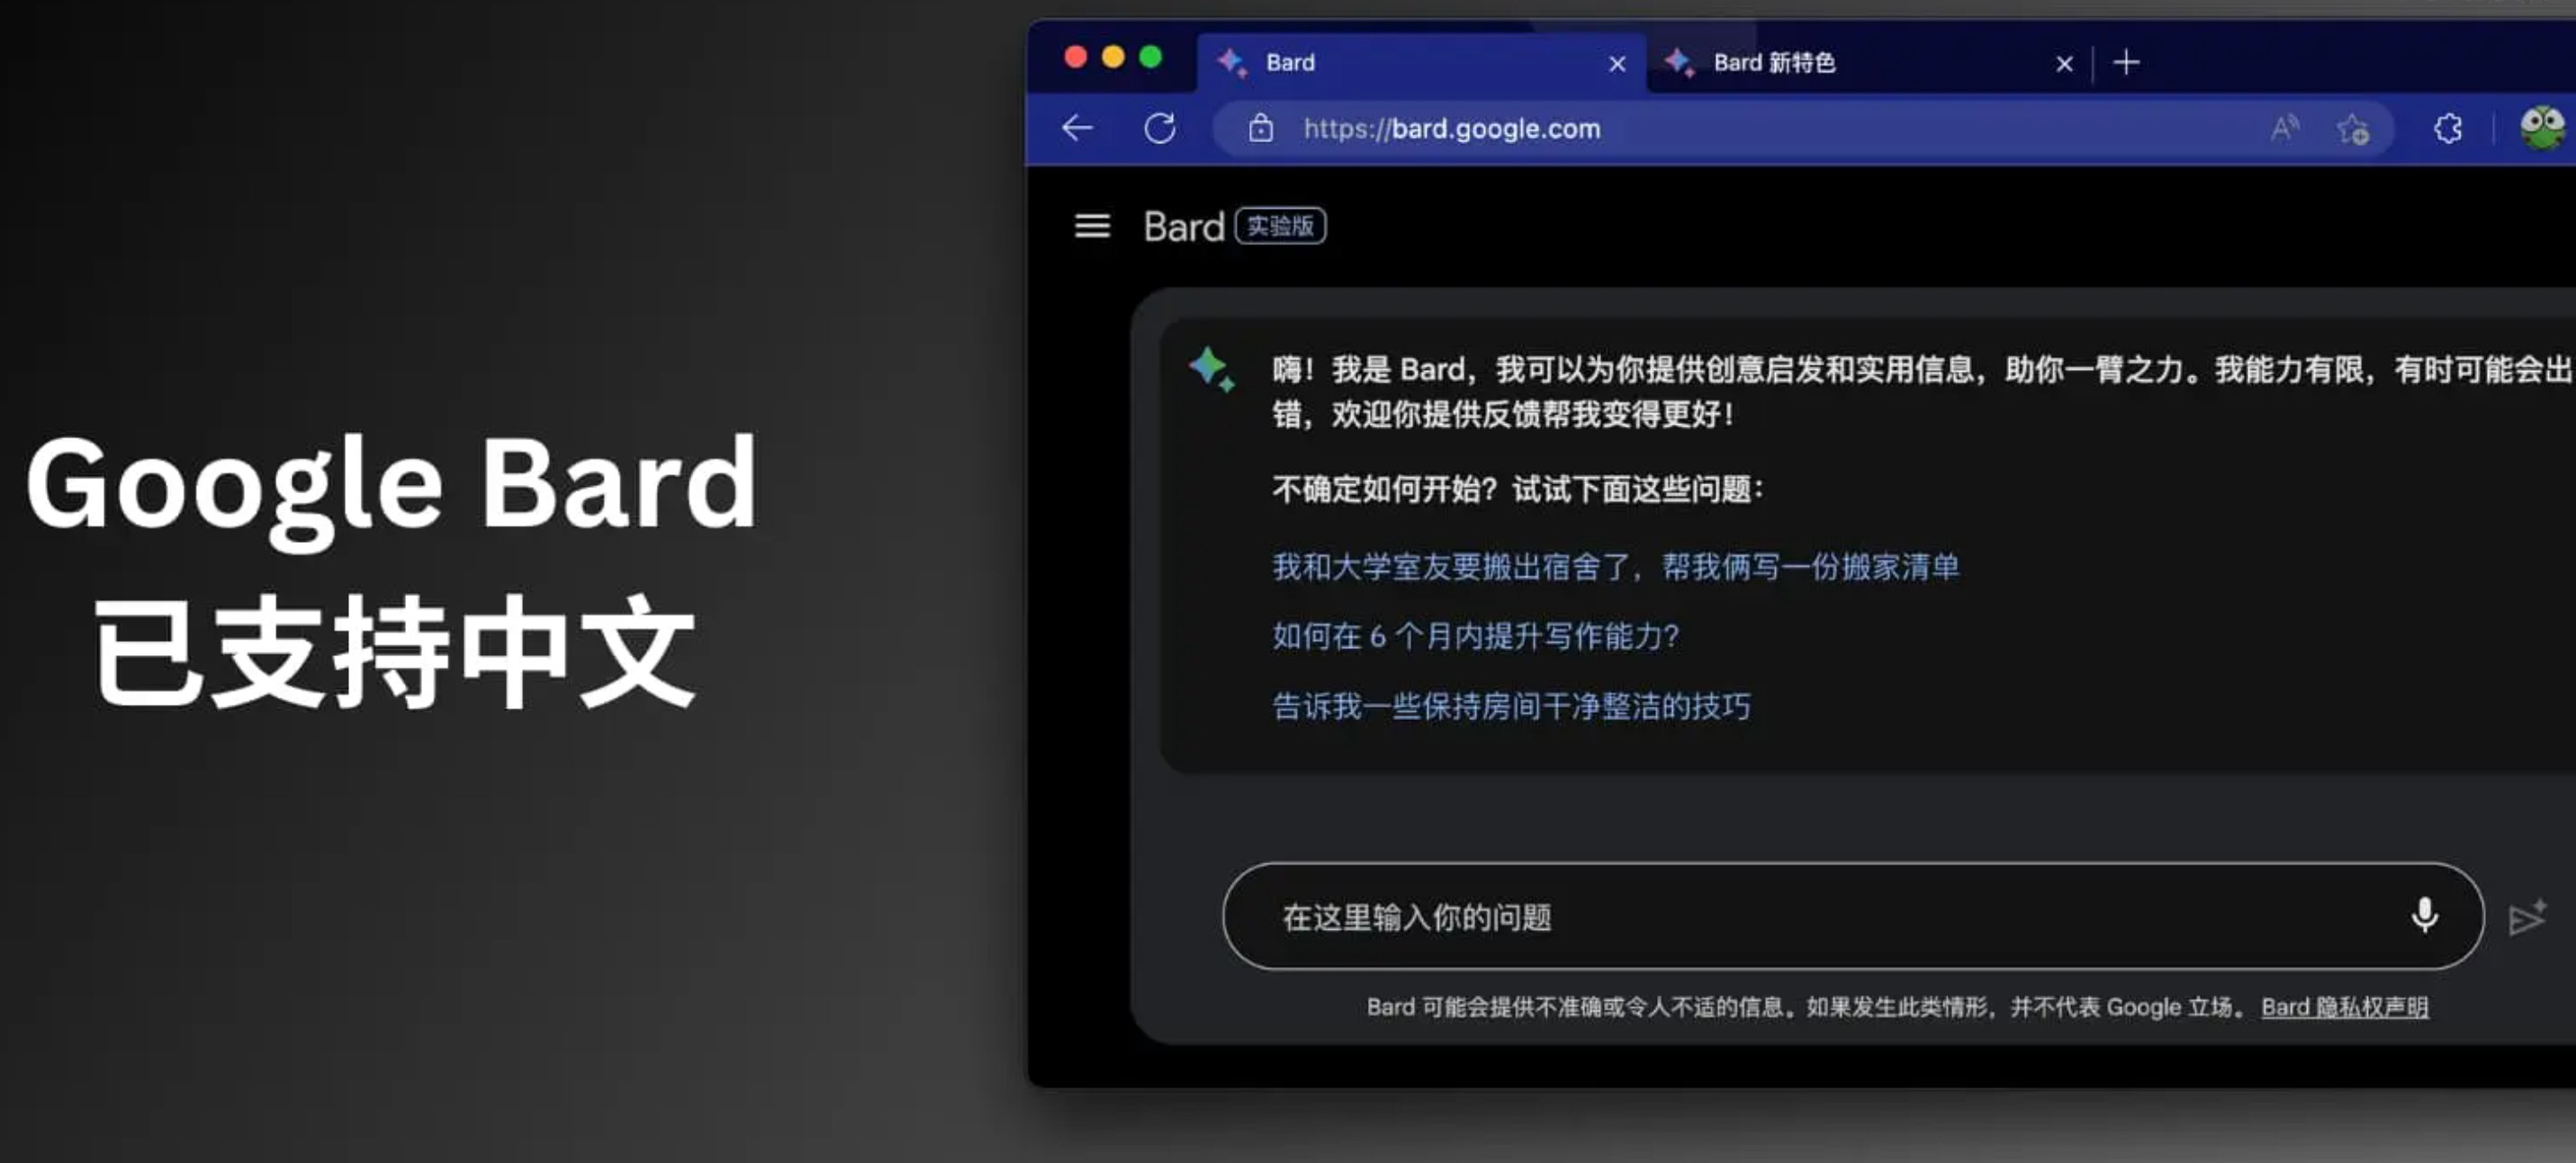 聊天大语言模型谷歌Bard现已支持中文_0